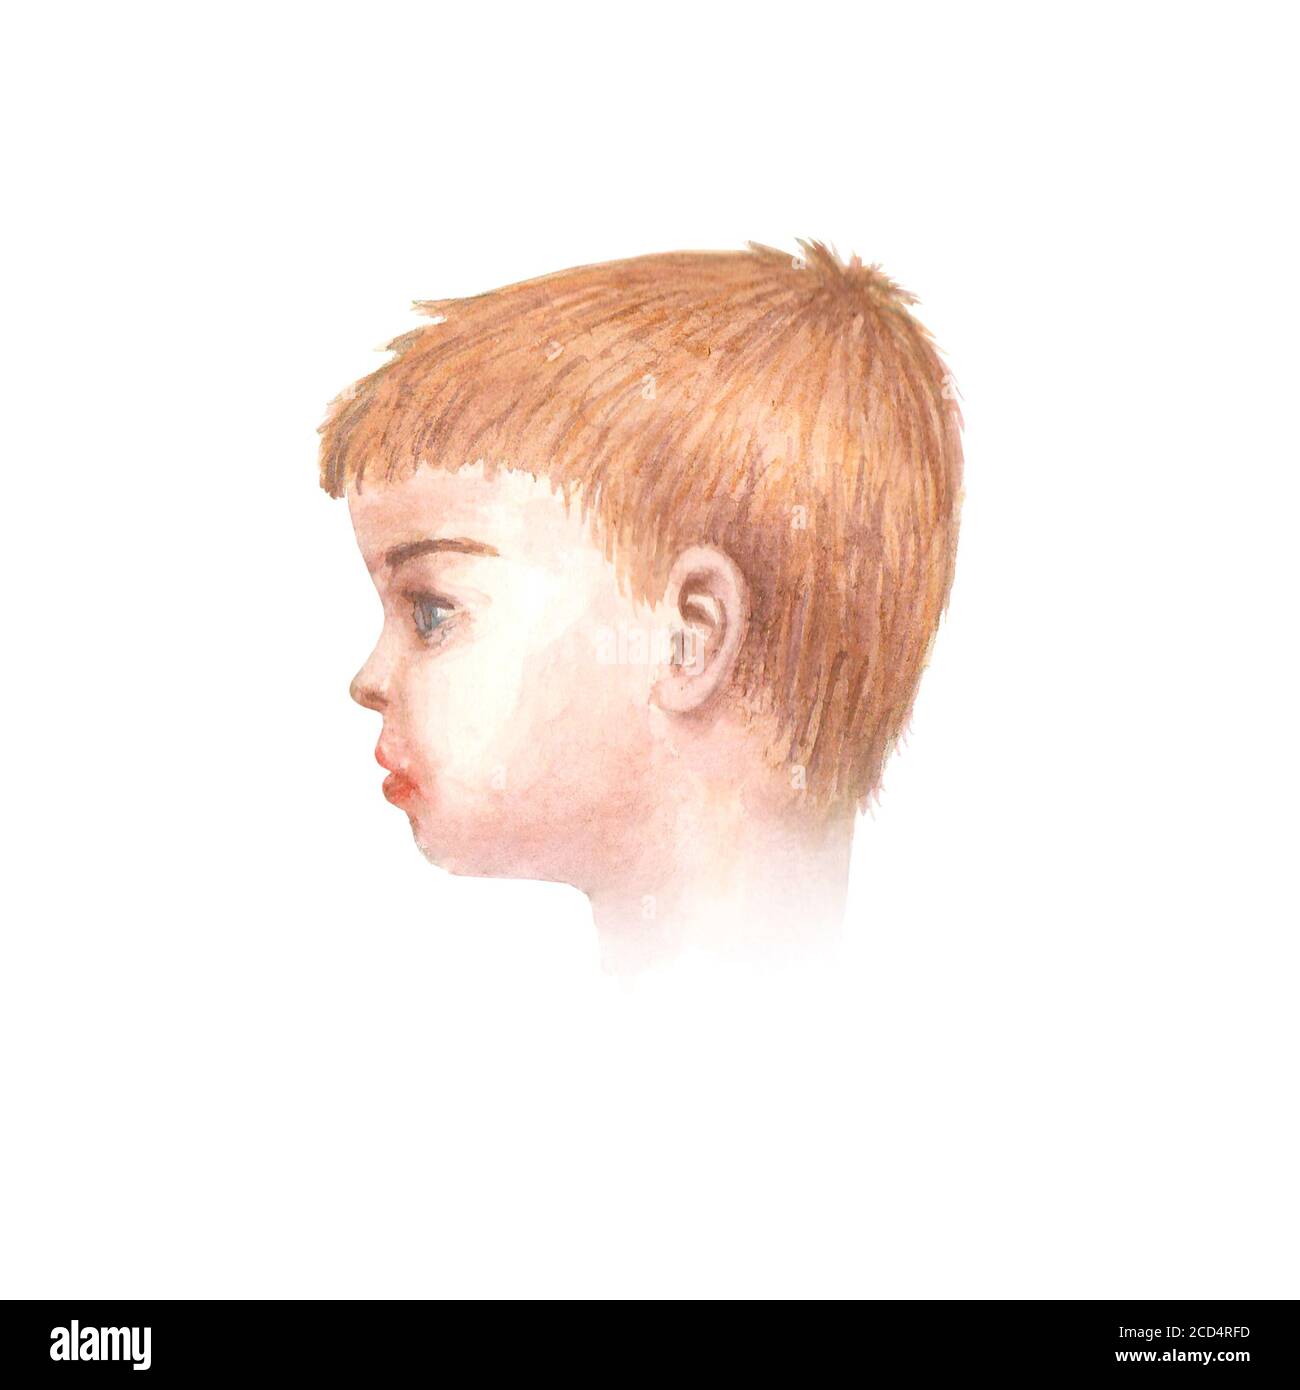 Profil aquarelle de la tête d'un enfant. Illustration aquarelle dessinée à la main. Portrait d'un petit garçon aux cheveux blonds et aux yeux bleus isolés sur le dos blanc Banque D'Images